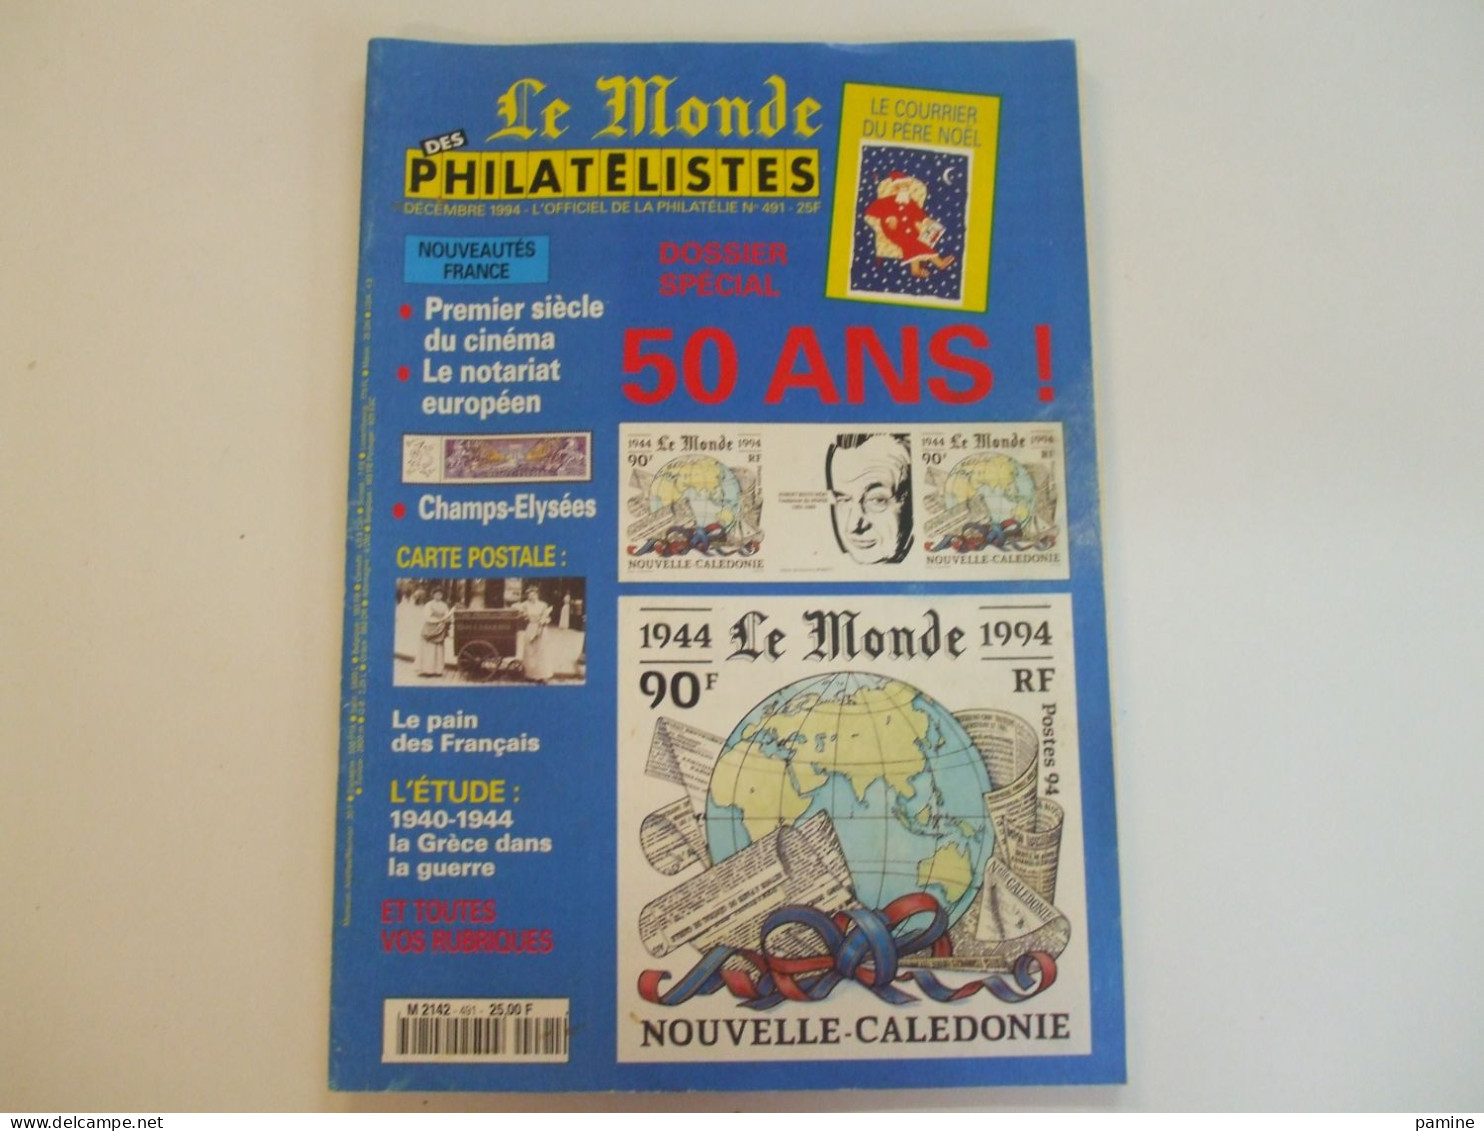 Le Monde des Philatélistes année 1994 complète (11 n°) du 481 au 491